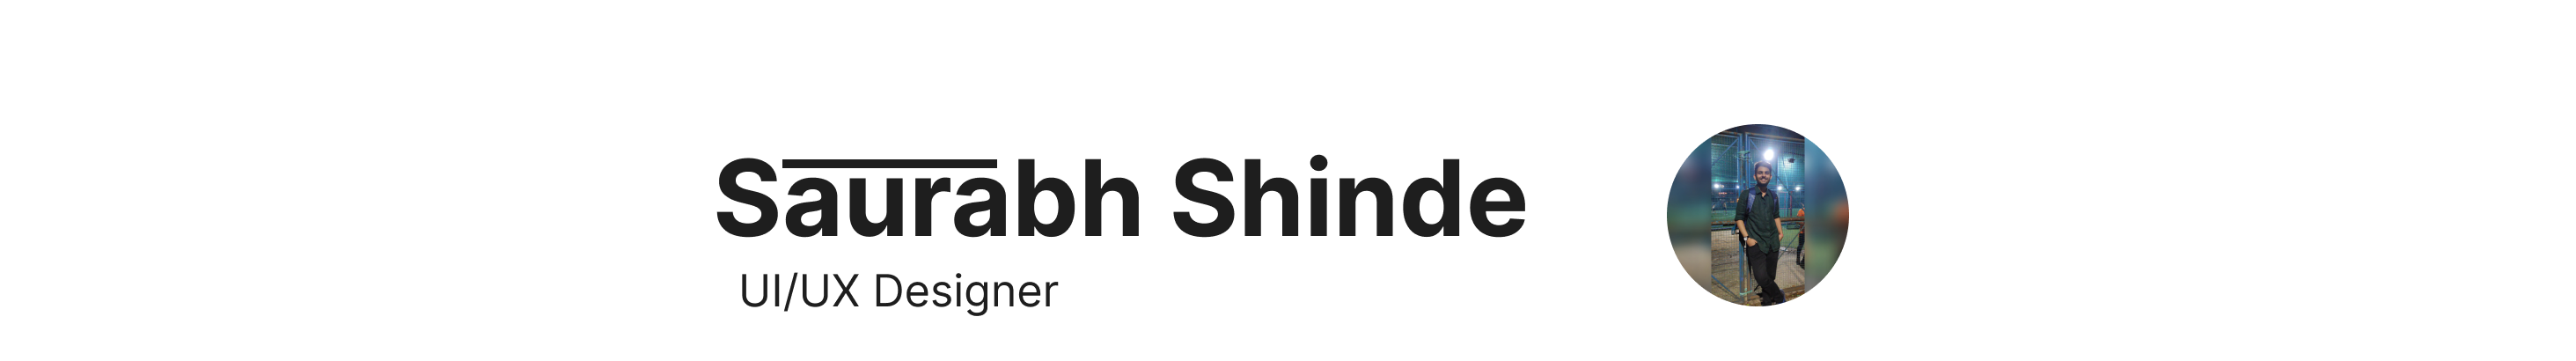 Saurabh Shinde's profile banner